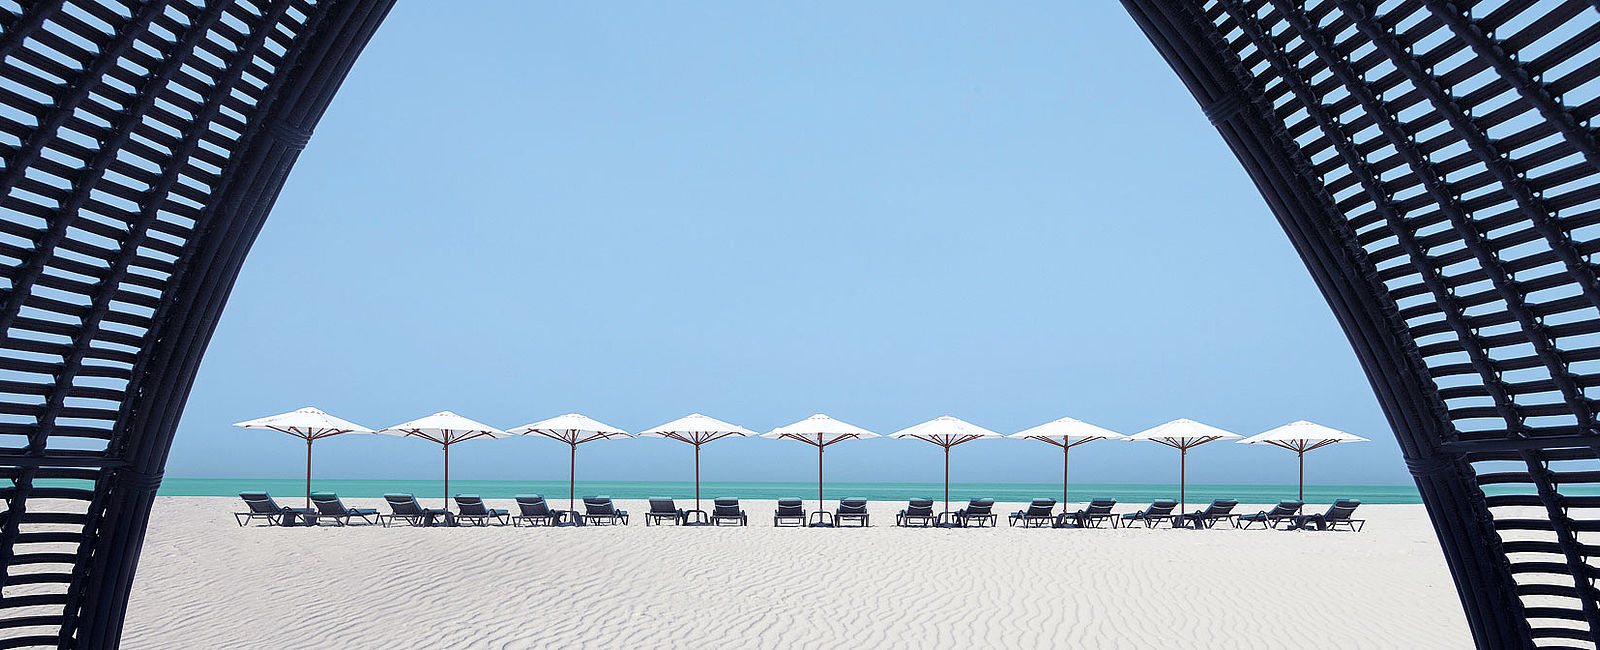 VERY SPECIAL HOTEL
 The St. Regis Saadiyat Island Resort, Abu Dhabi 
 Das Außergewöhnliche zählt … 